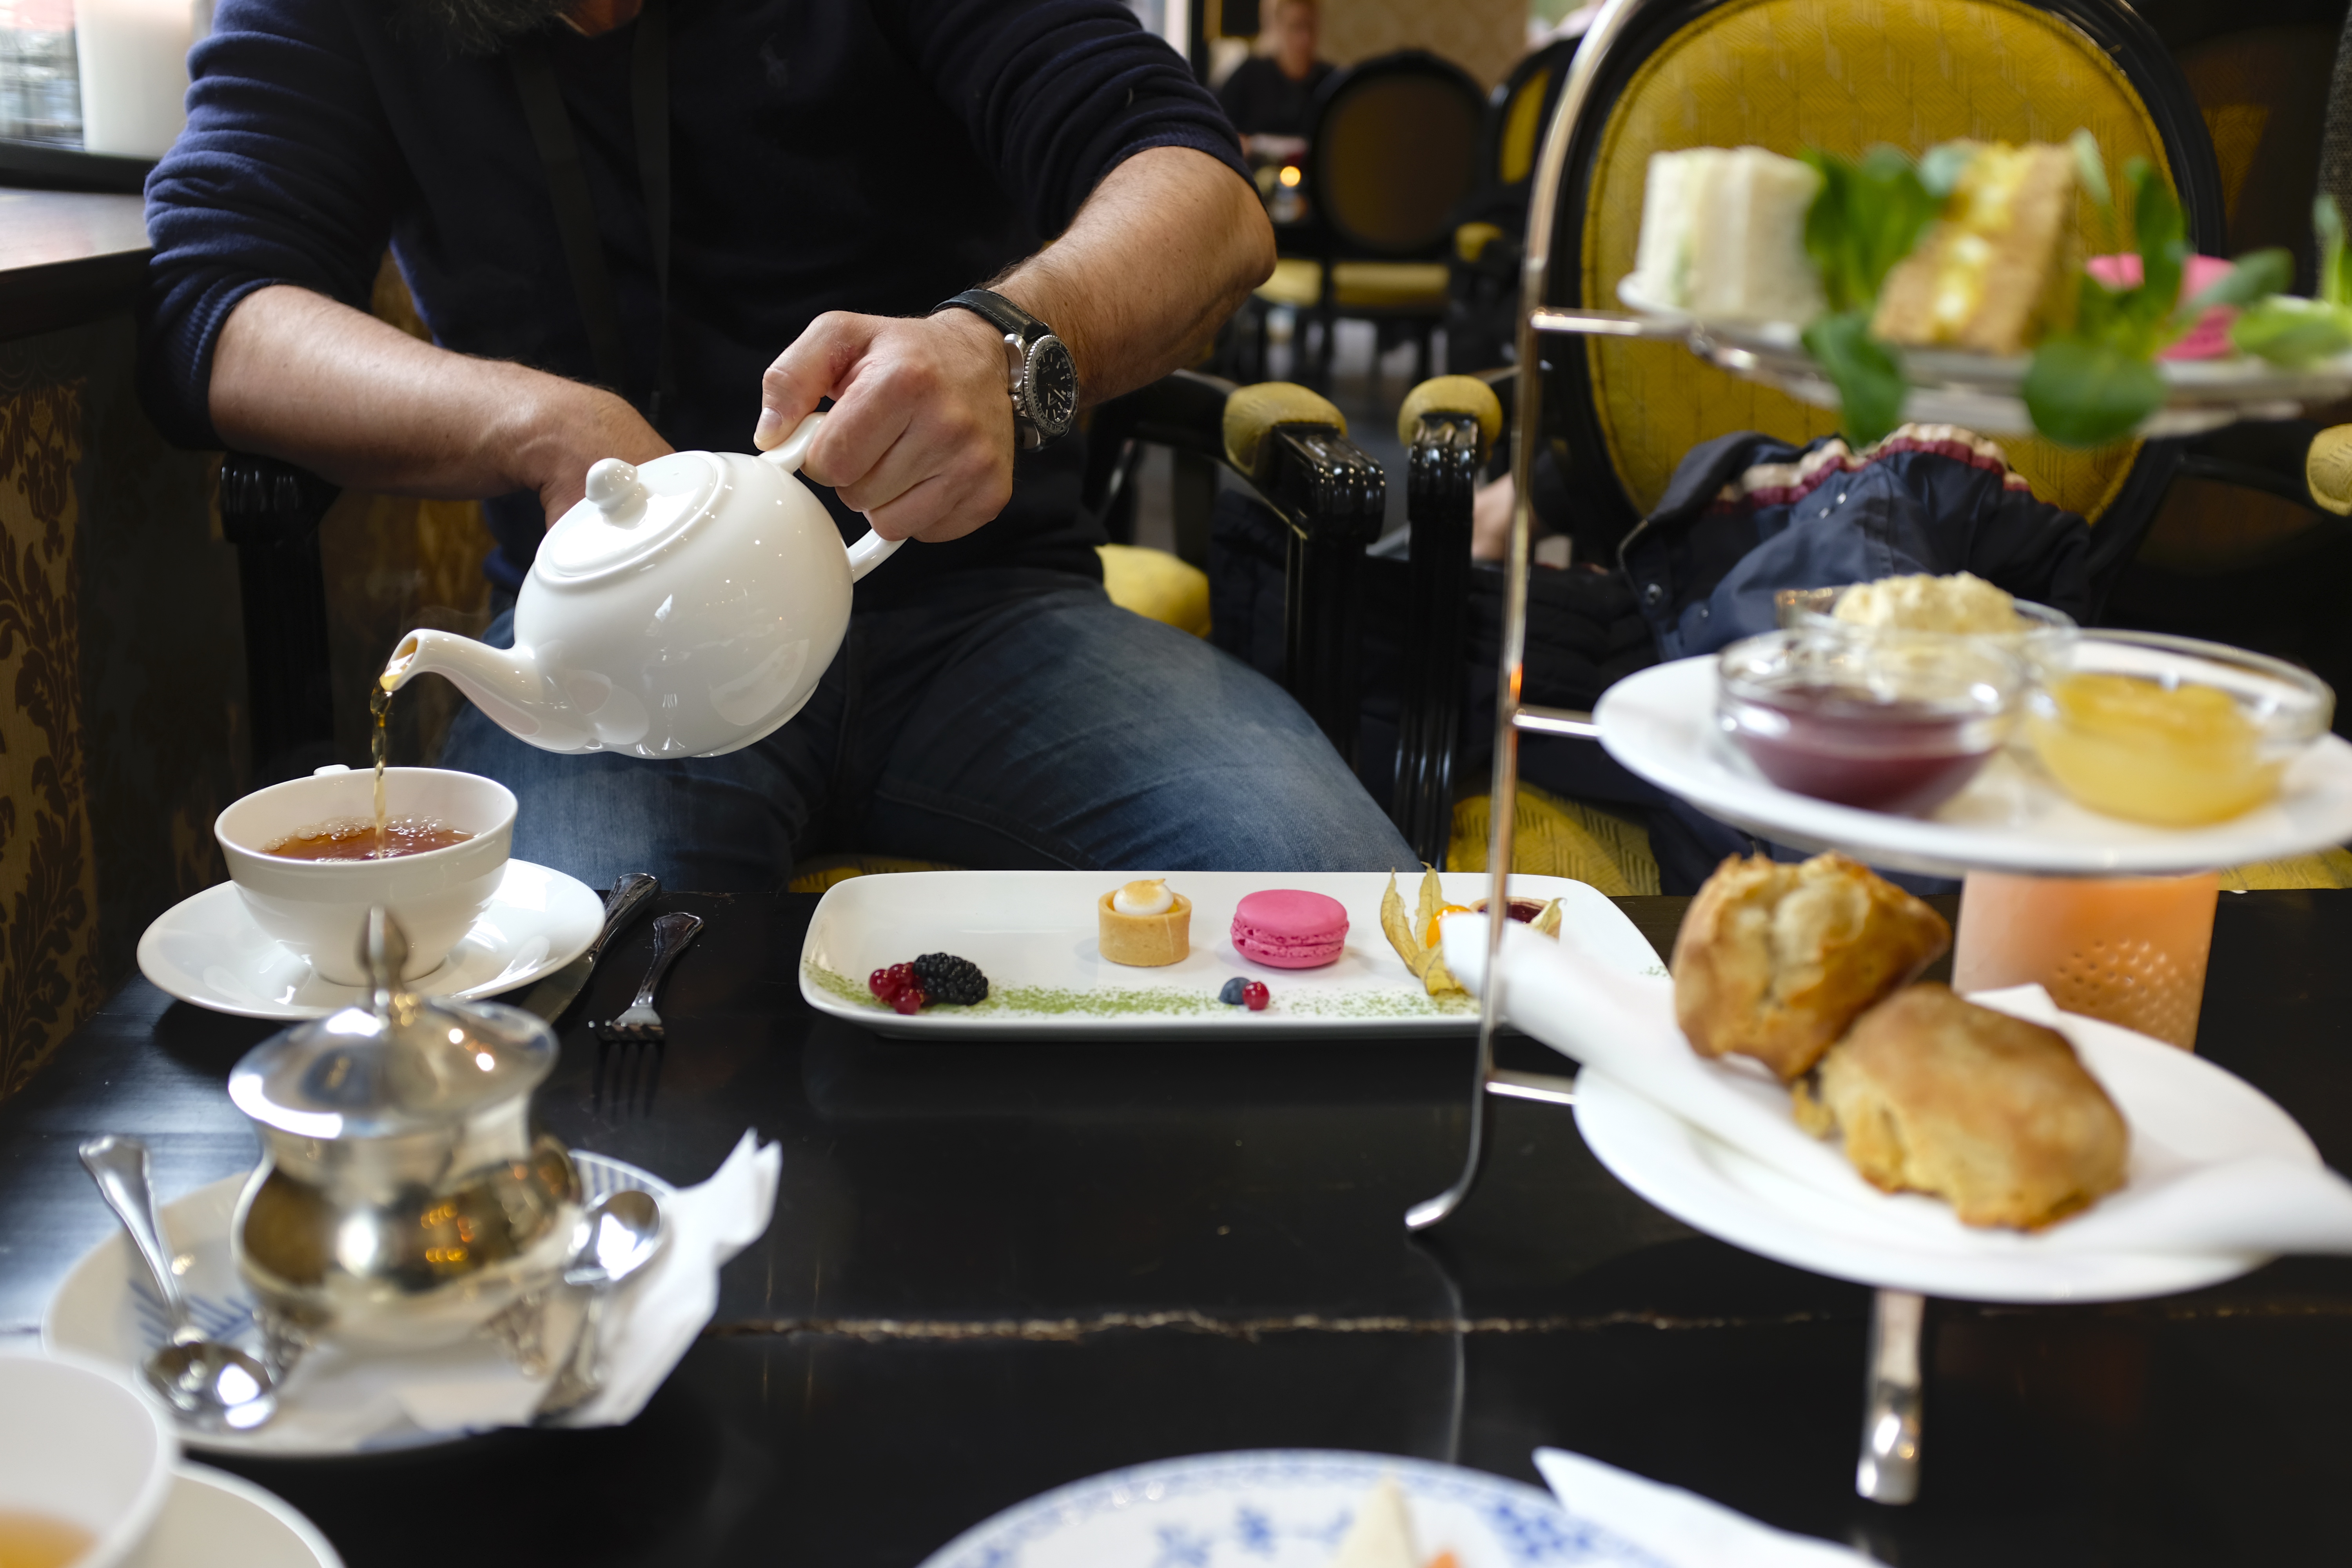 Kafé-tips i Nydelig afternoon tea og lunsj hos Perchs rett ved Karl Johan - de har en flott gavebutikk - ALLTID REISEKLAR